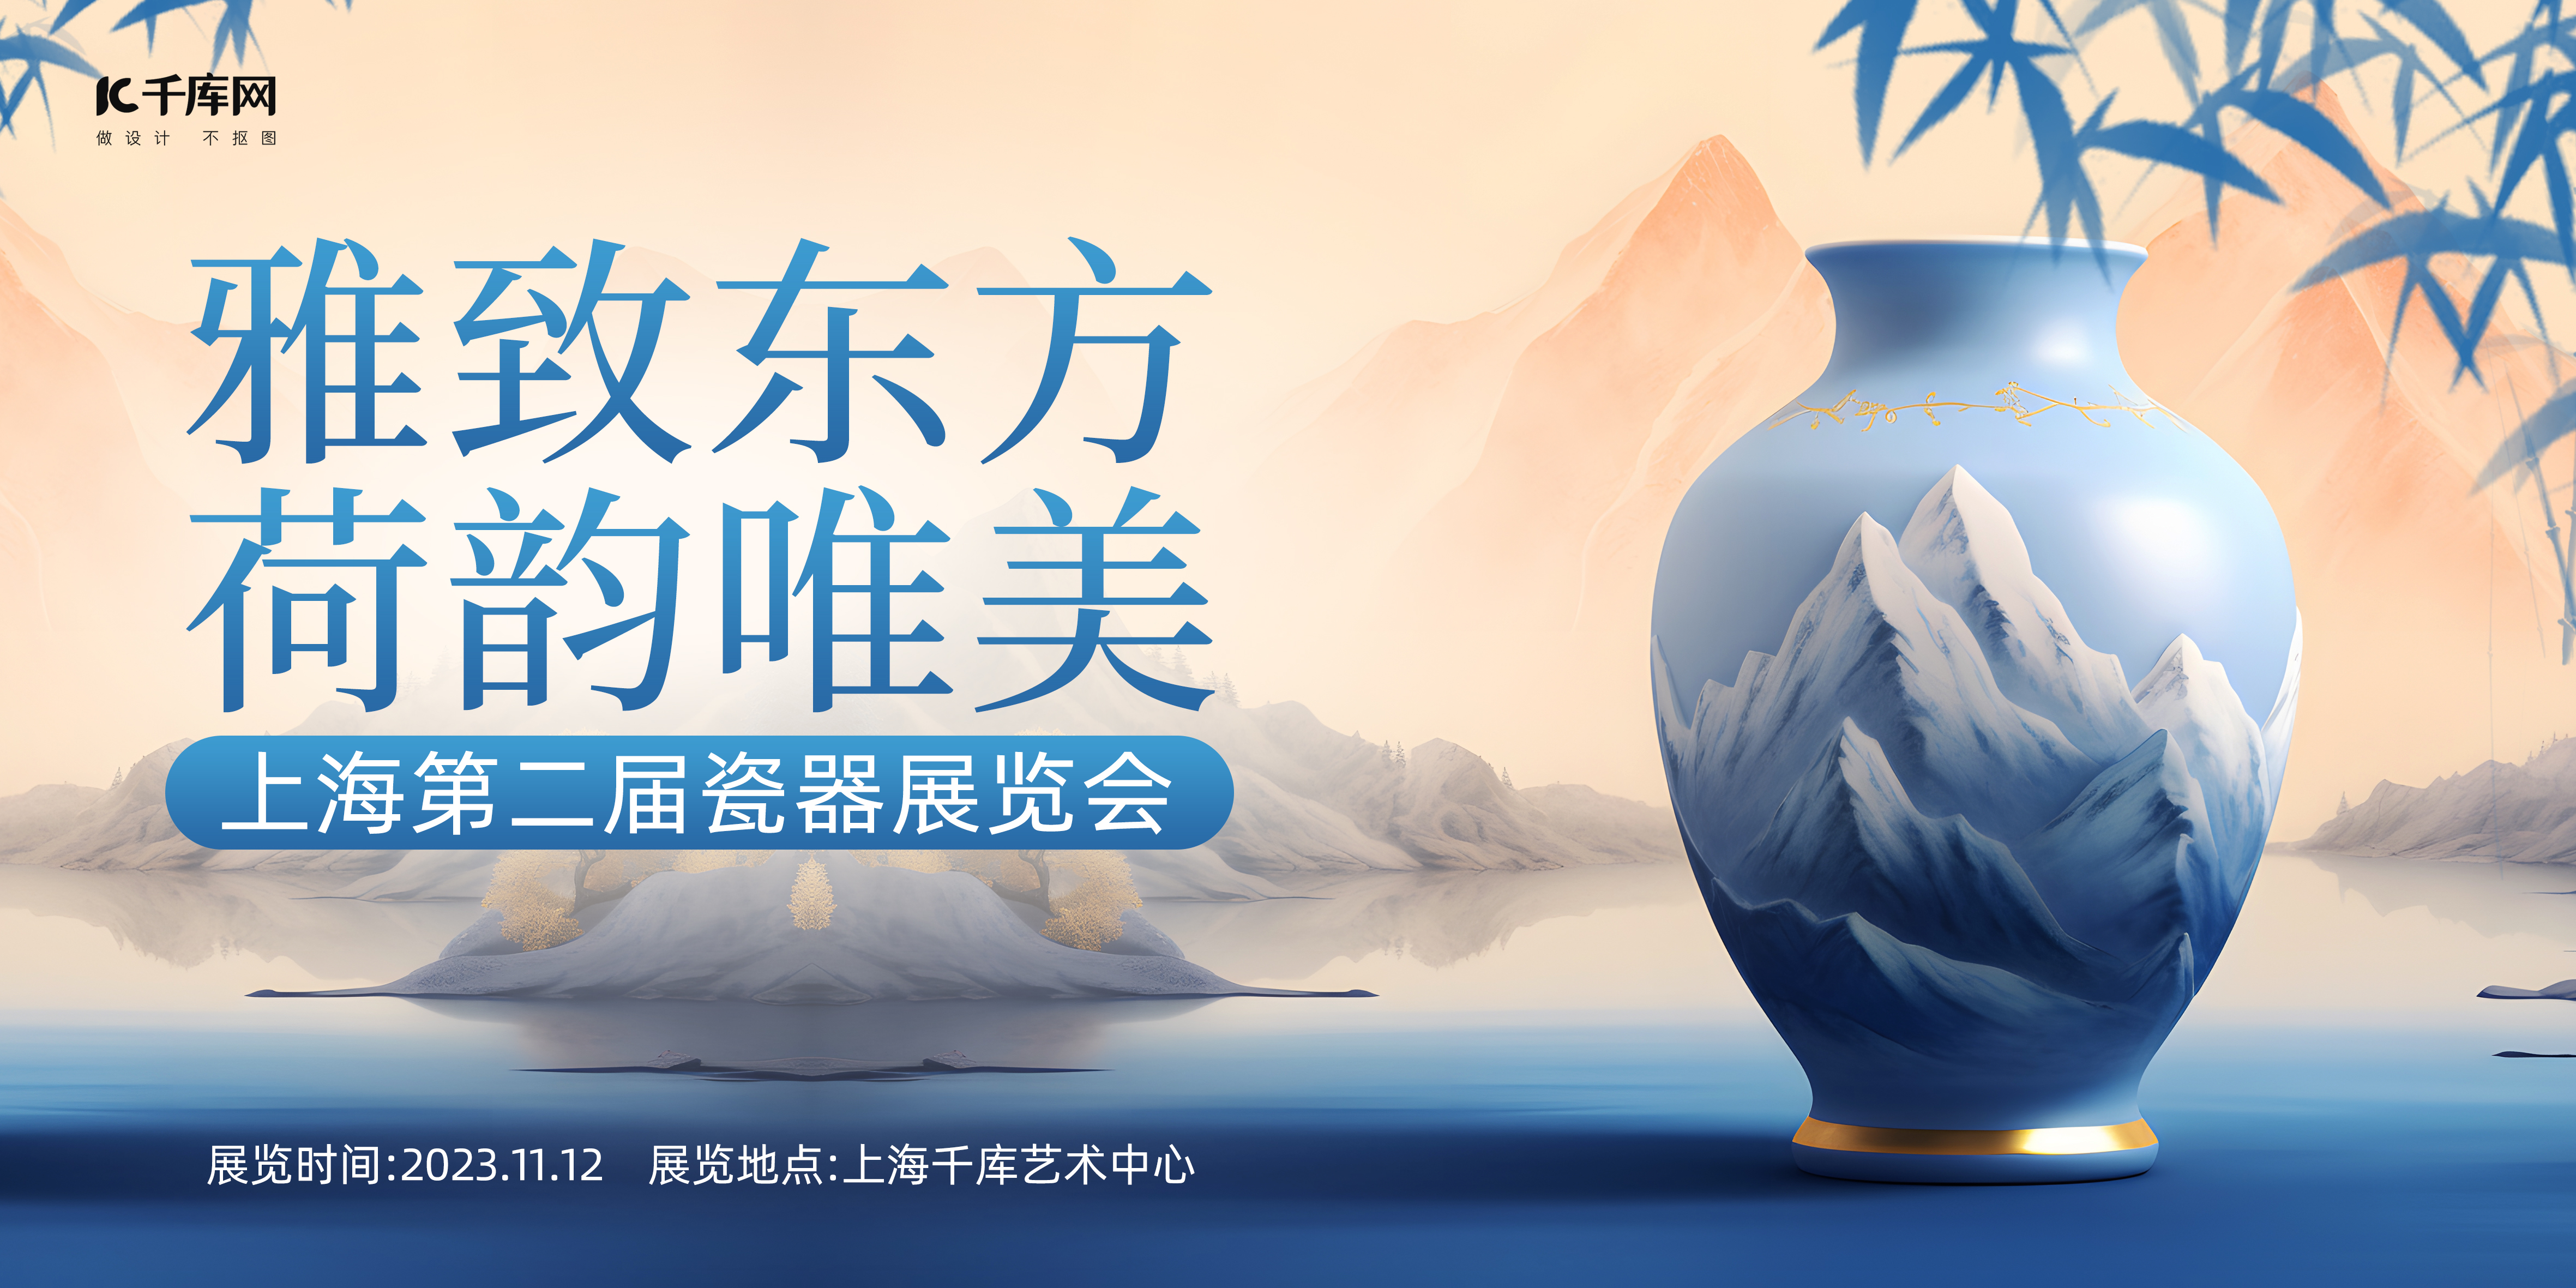 瓷器展览会陶瓷蓝色中国风展板图片